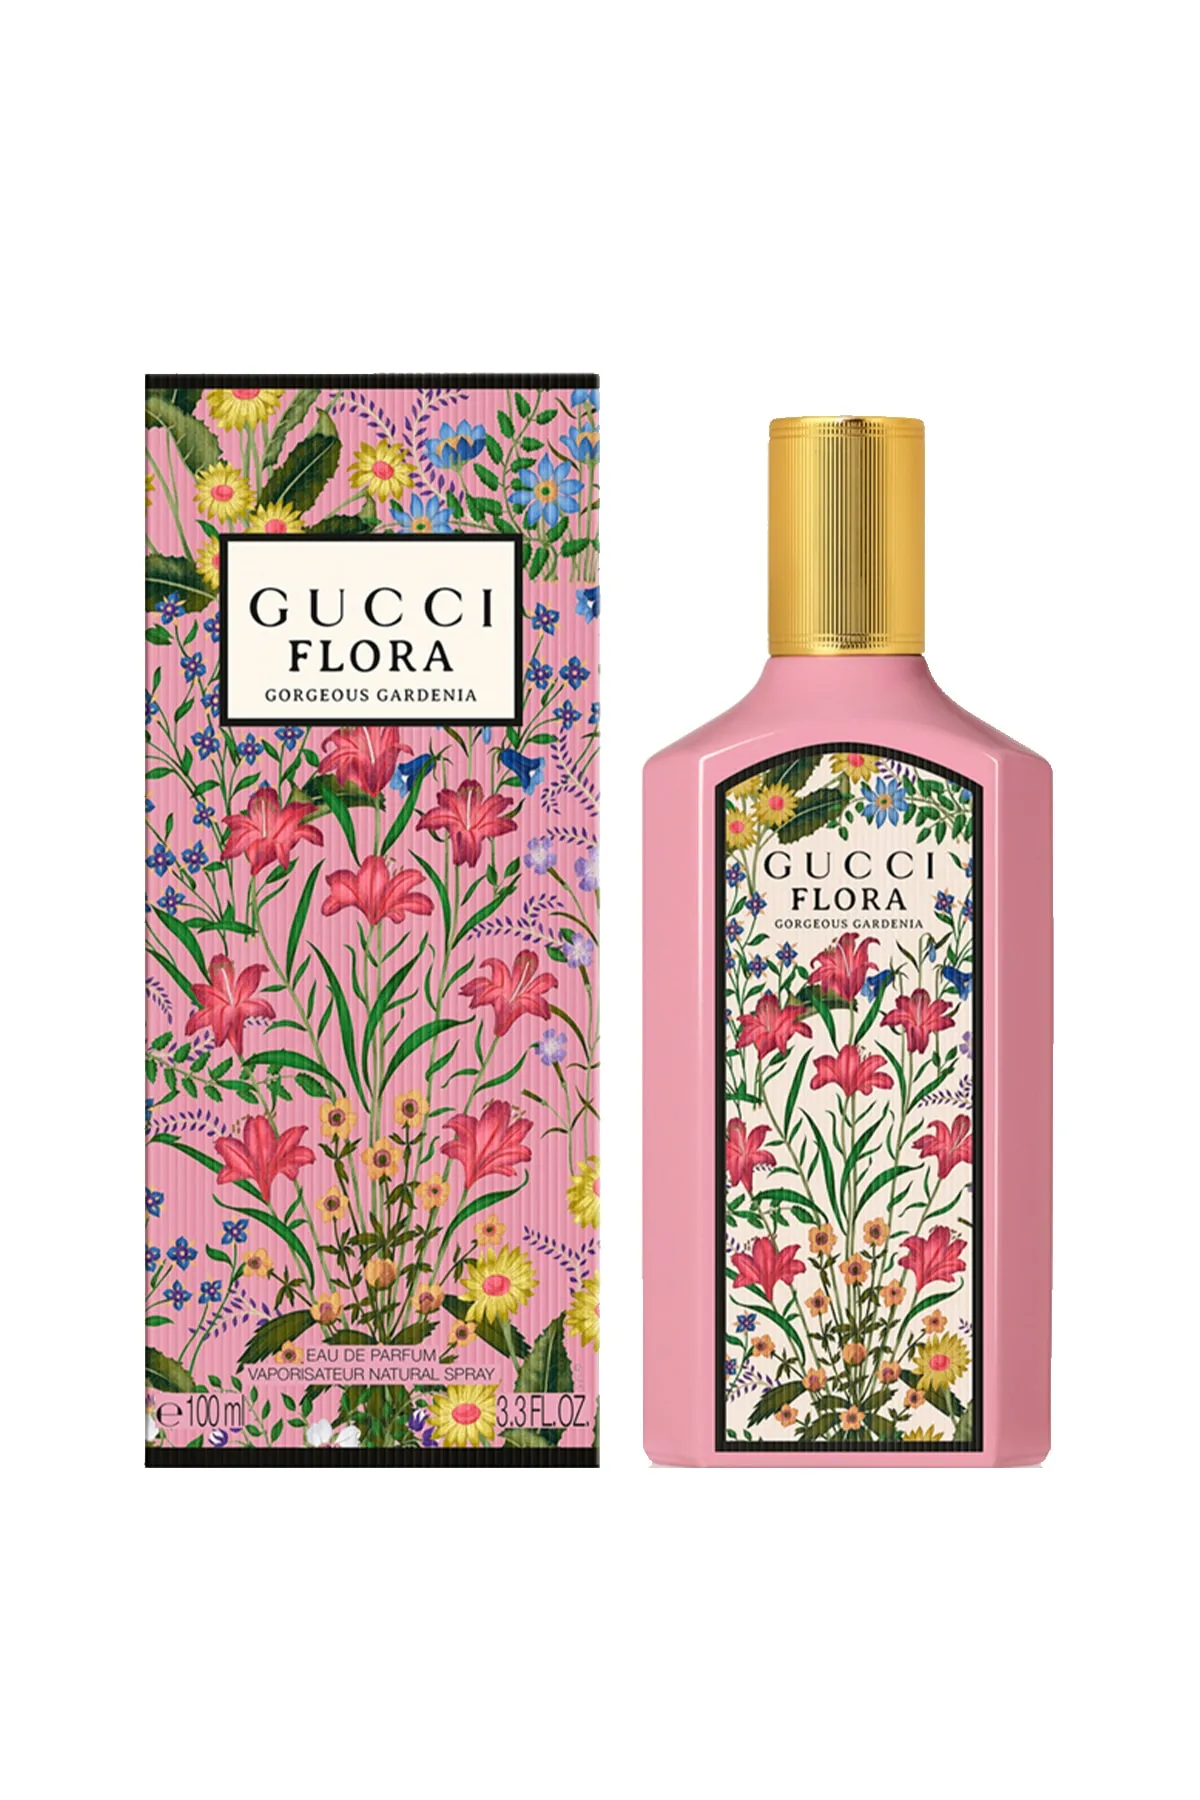 Gucci Flora Gorgeous Gardenia Edp 100 ml - 1